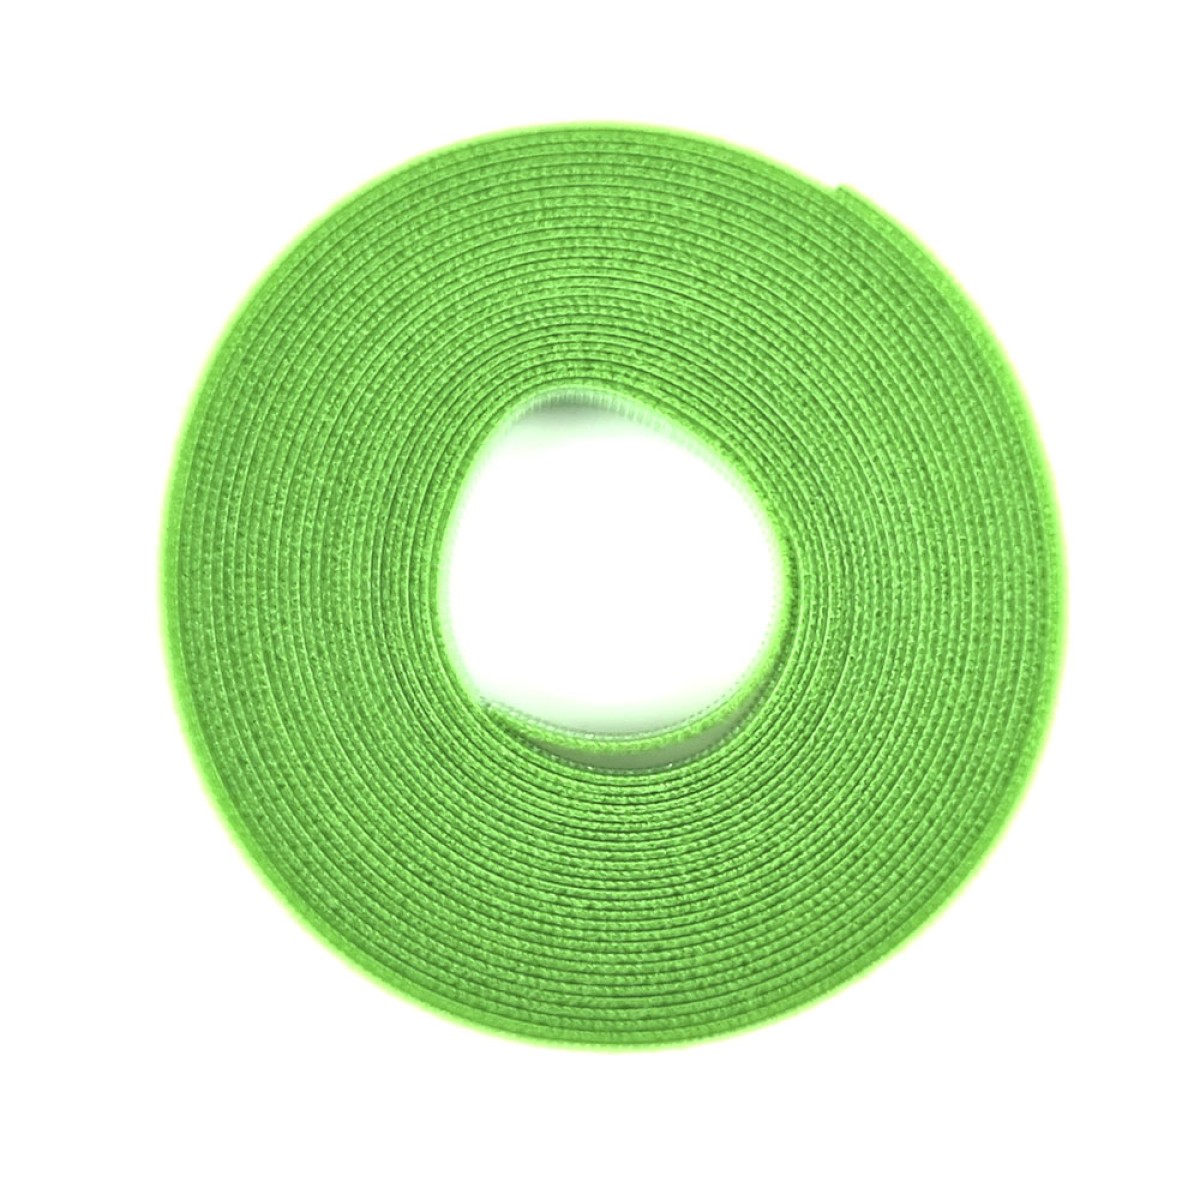 Двухсторонняя стяжка-липучка, 10мм x 5м, моток, зеленая, EServer 256_256.jpg